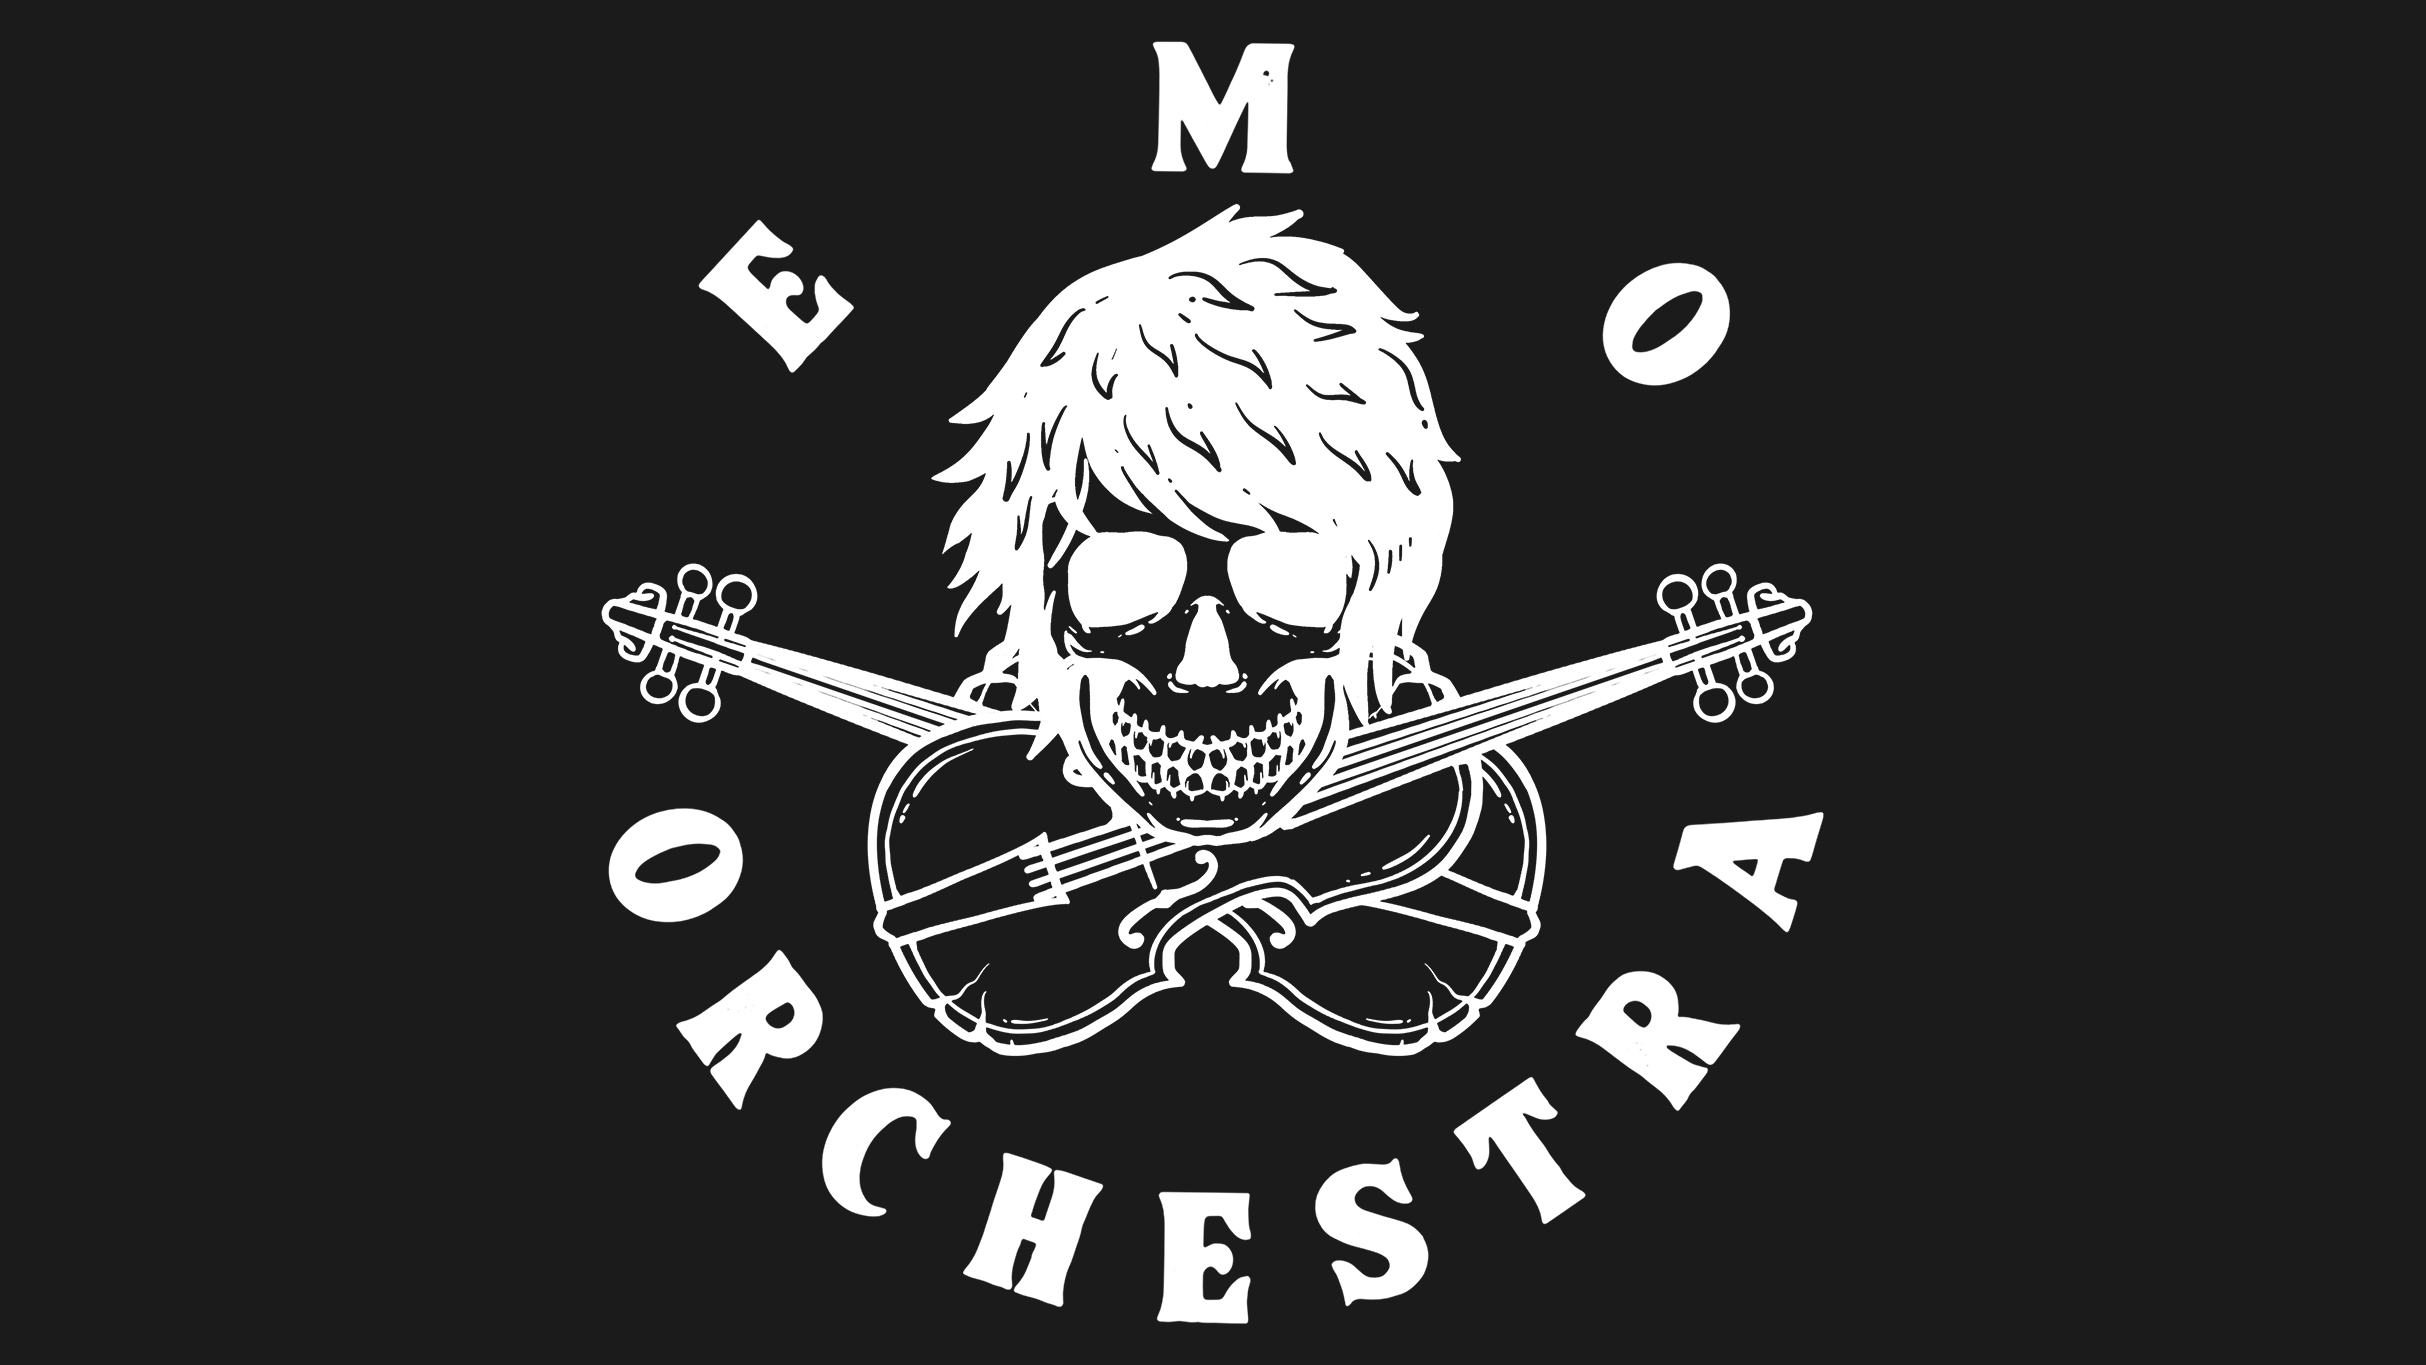 EMO ORCHESTRA featuring ESCAPE THE FATE